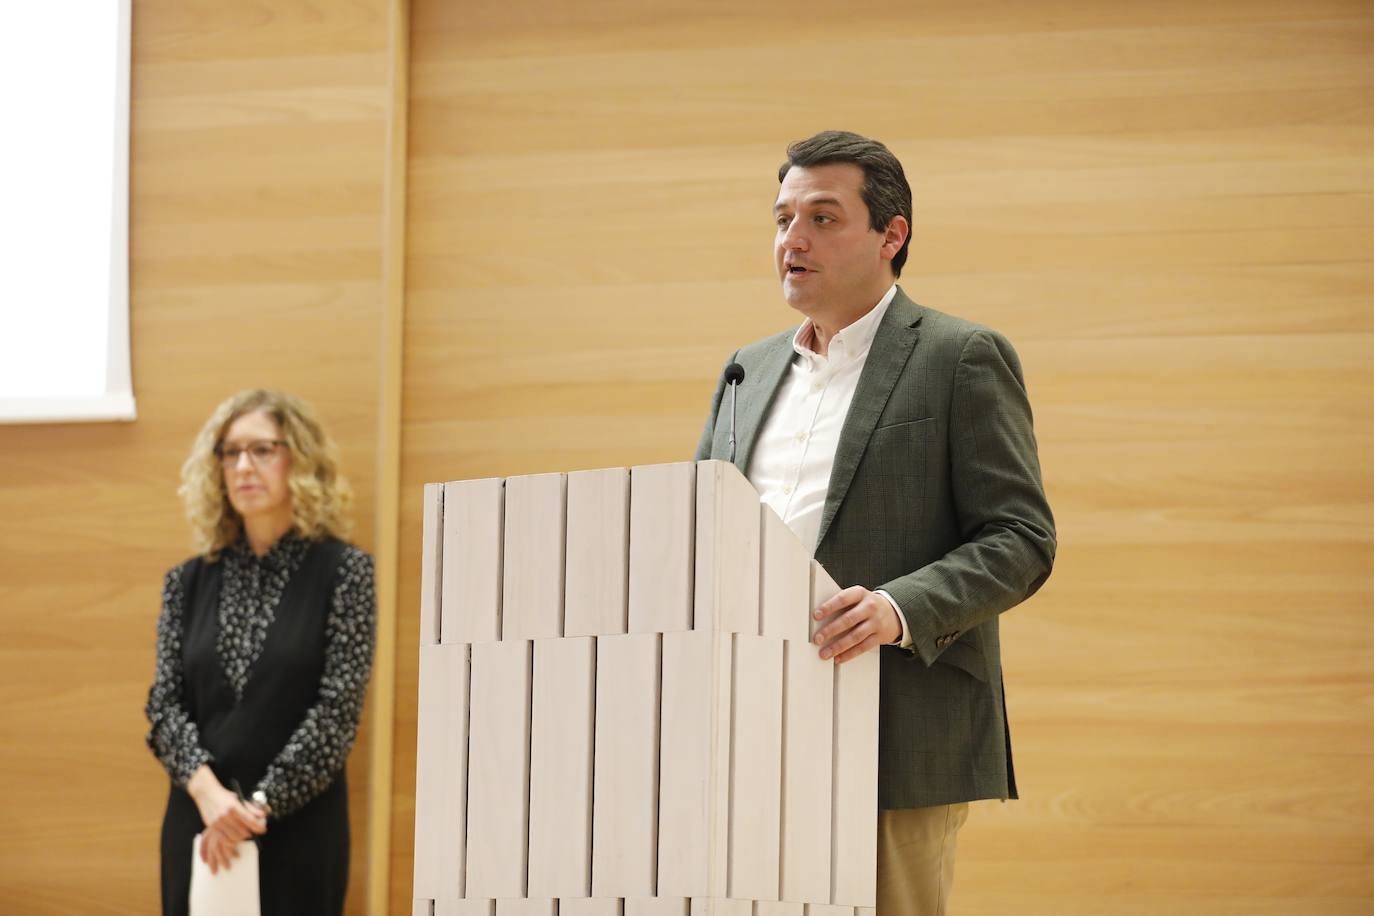 La entrega de los premios de arquitectura Félix Hernández en Córdoba, en imágenes